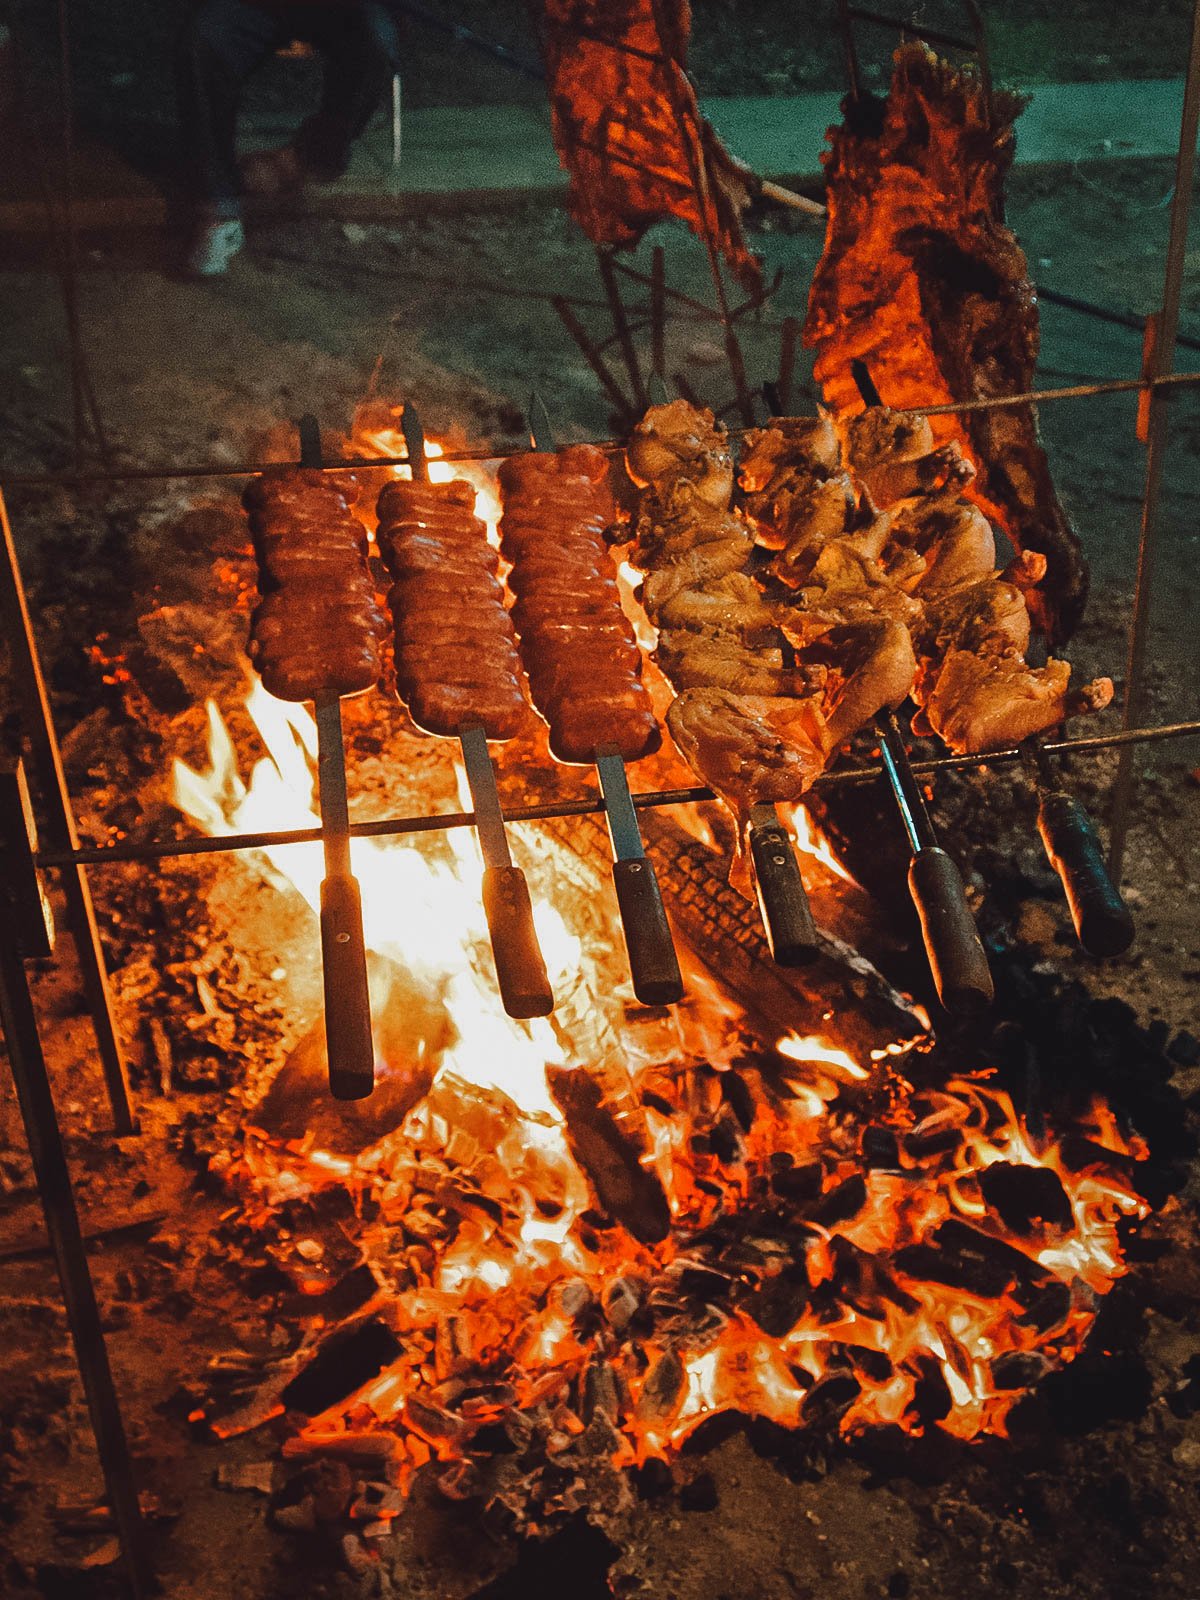 Churrasco meats Grill peste un foc, una dintre cele mai delicioase tradiții braziliene